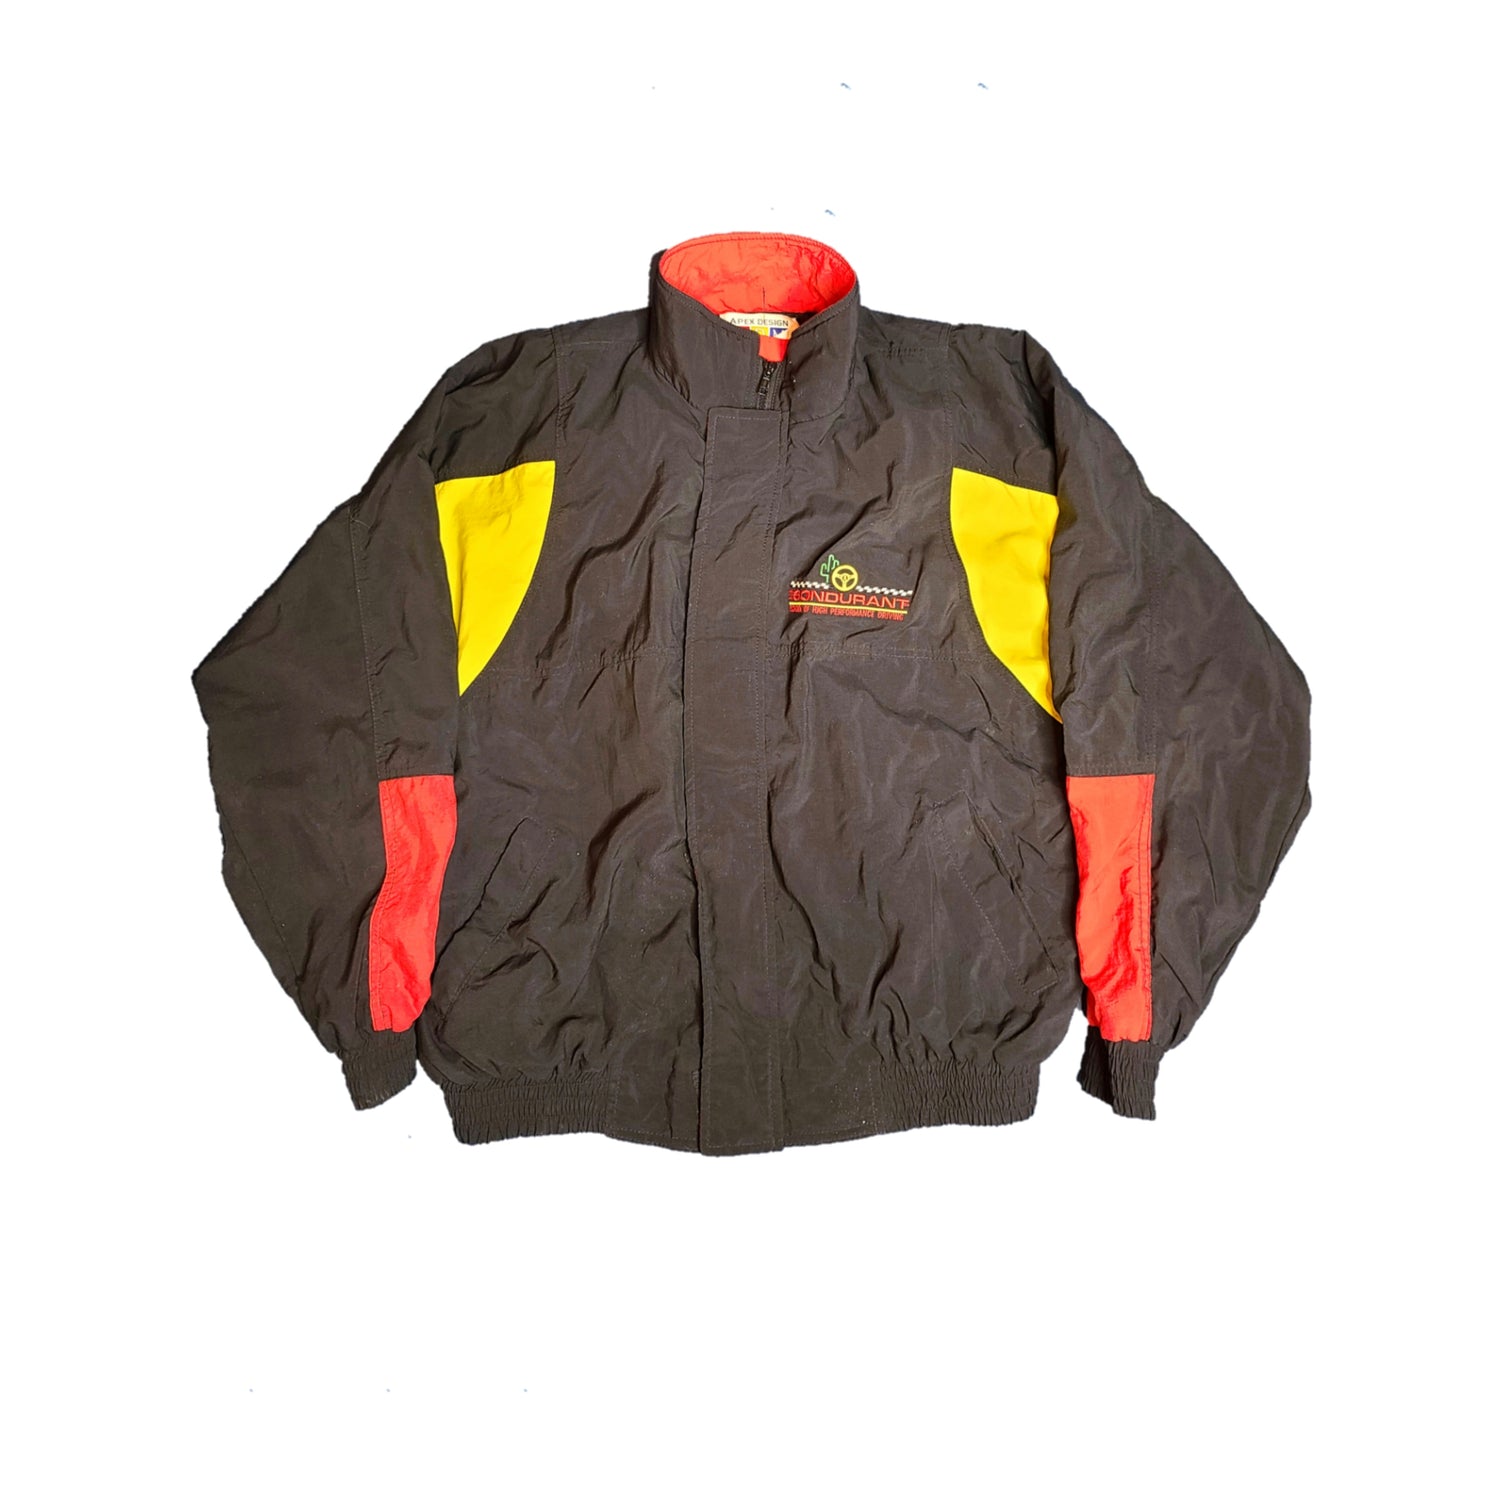 Blouson motor driver vintage 80s oversize kway fluo sportwear